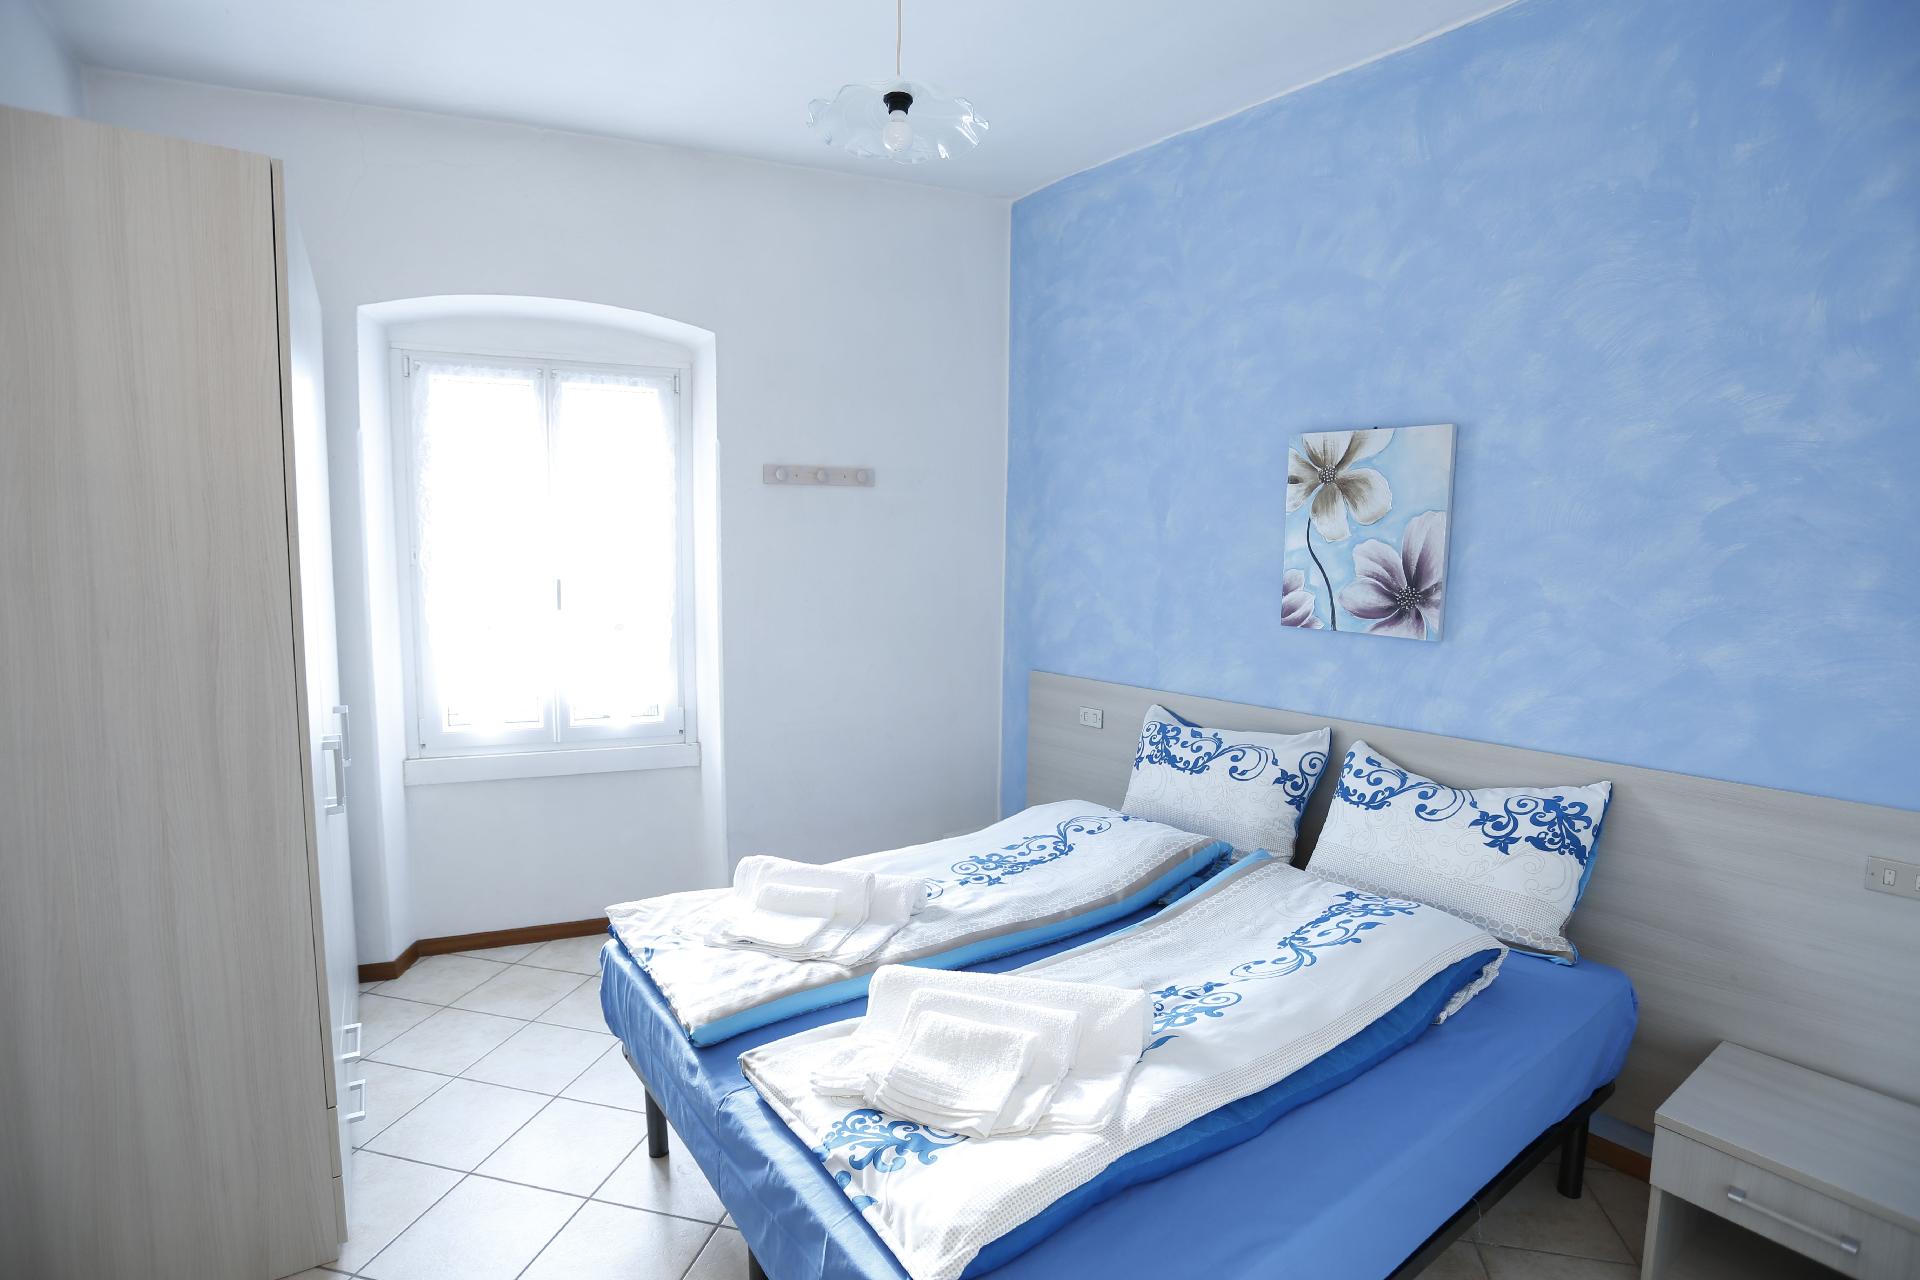 Ferienwohnung für 4 Personen ca. 58 m² i Ferienhaus in Italien